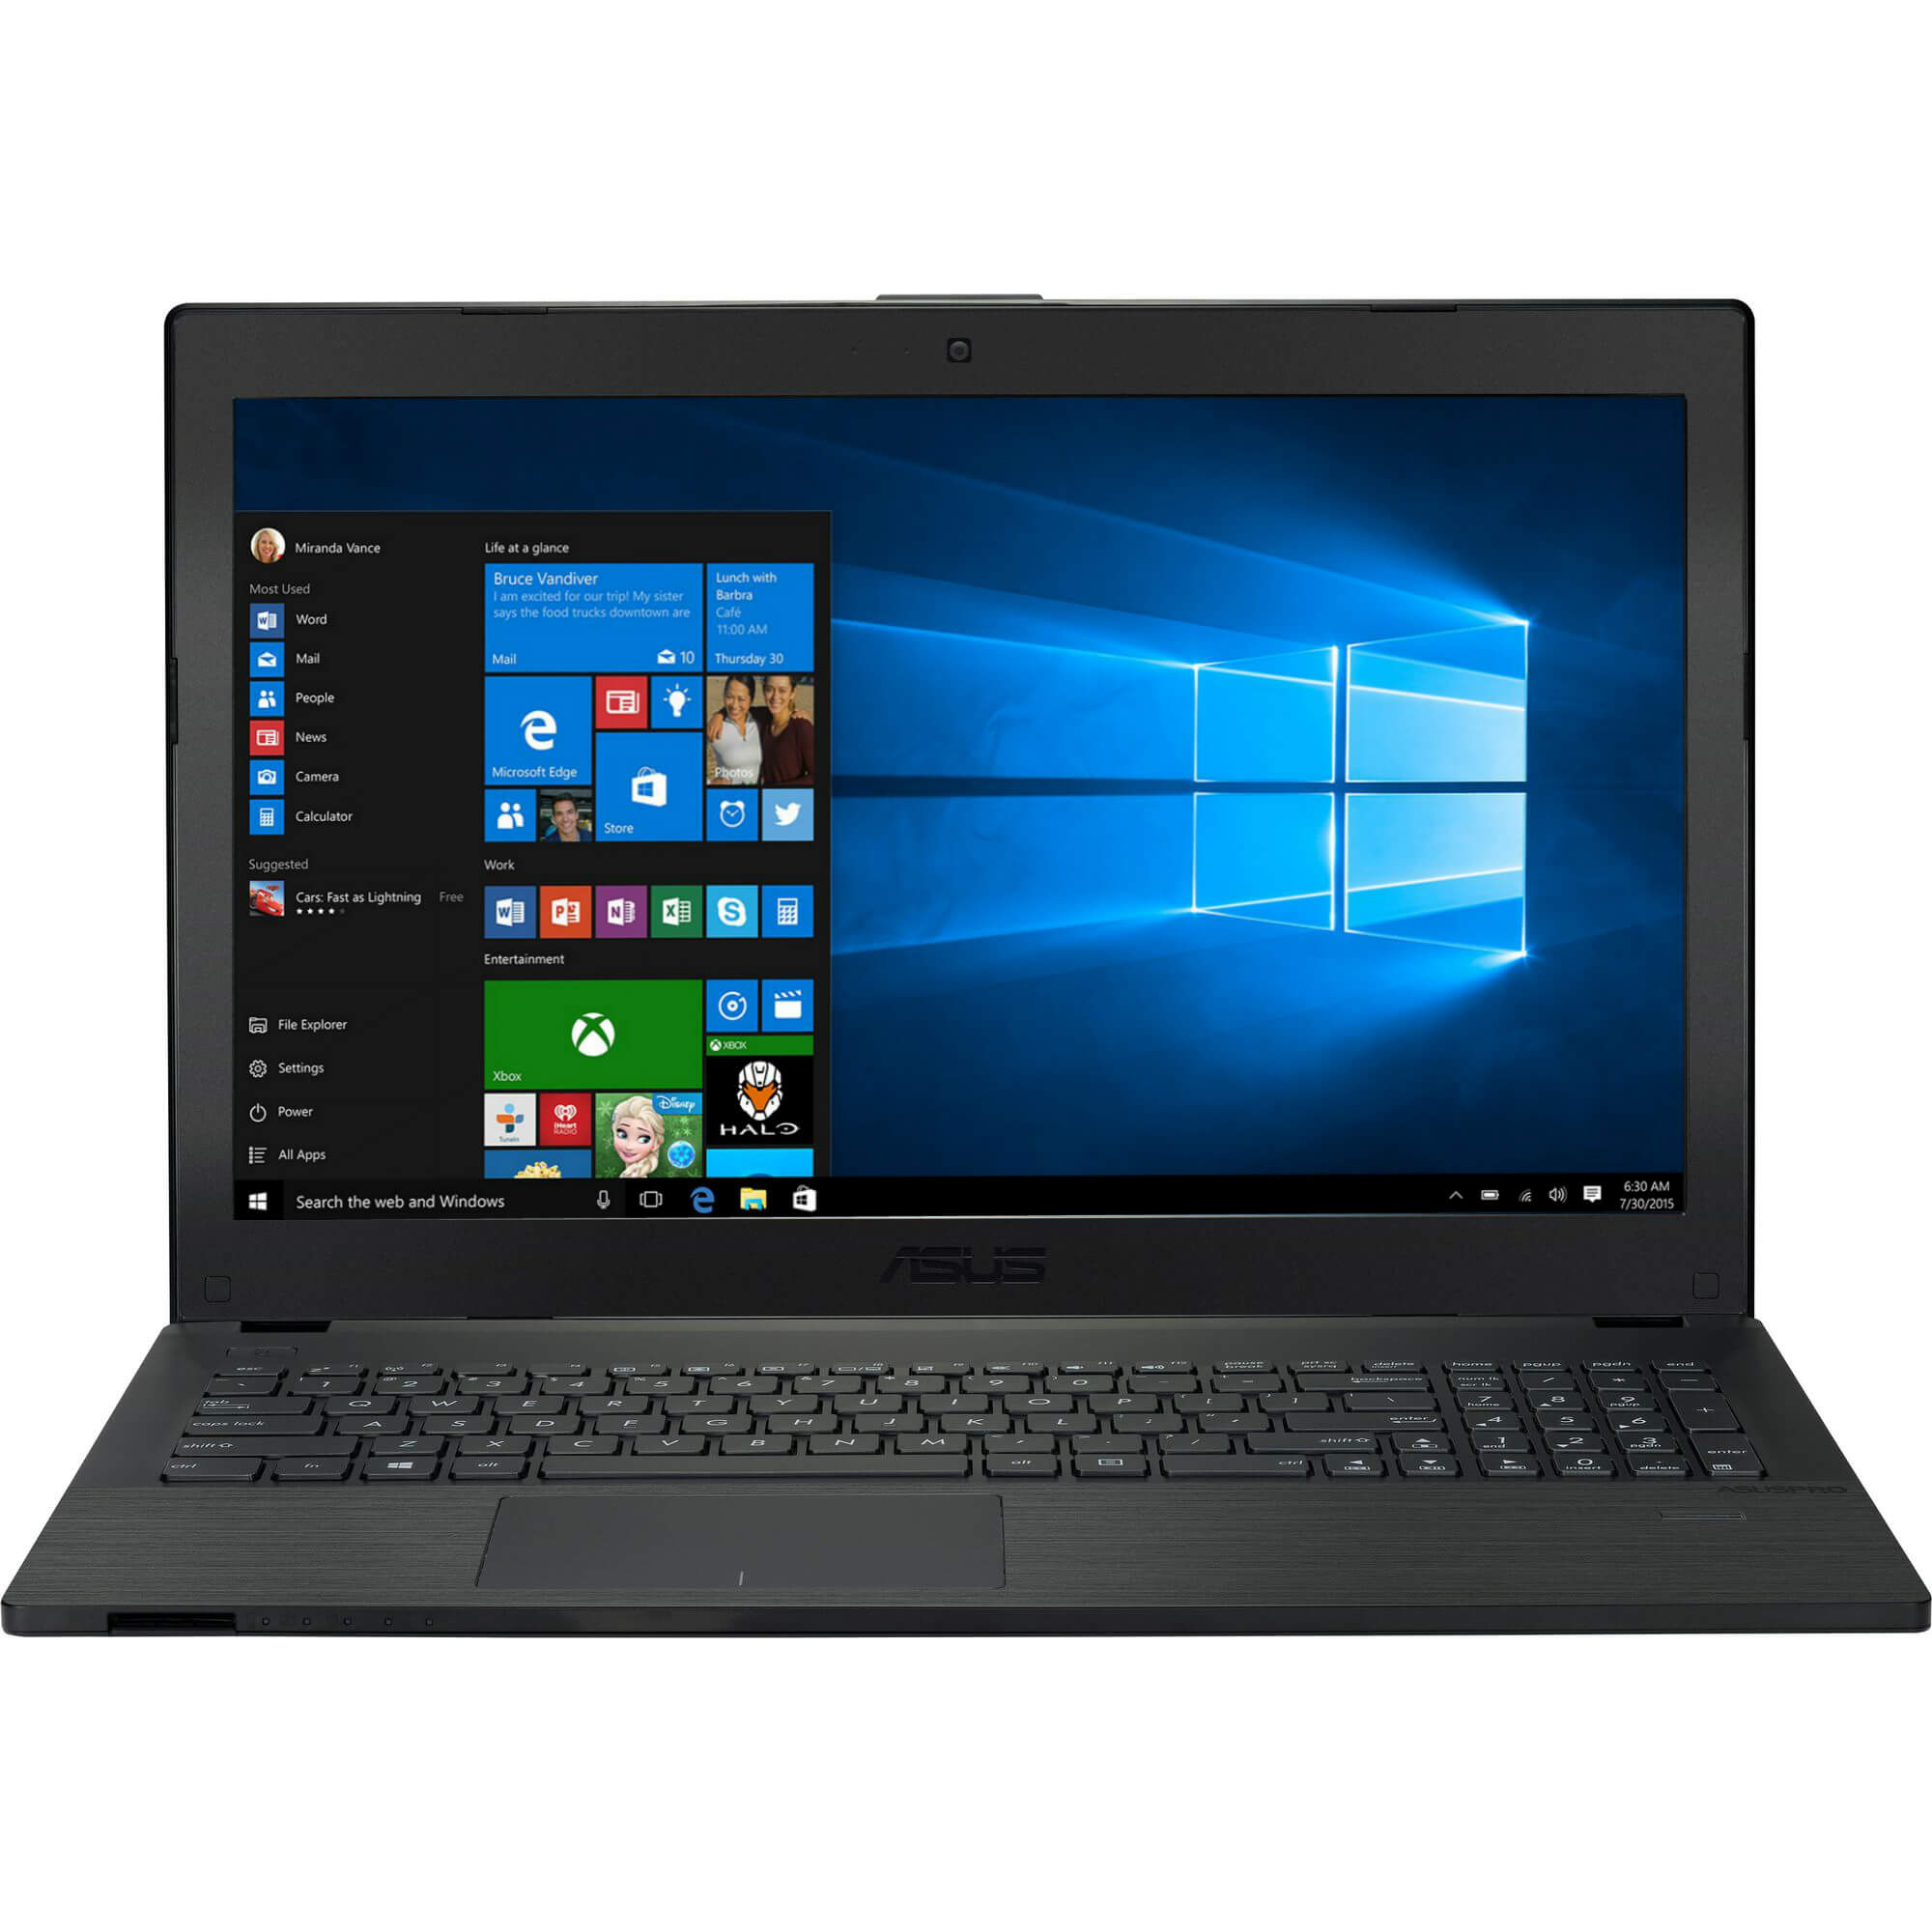  Laptop Asus P2520LA, Intel Core i7-5500U, 8GB DDR3, HDD 500GB, Intel HD Graphics, Windows 10 